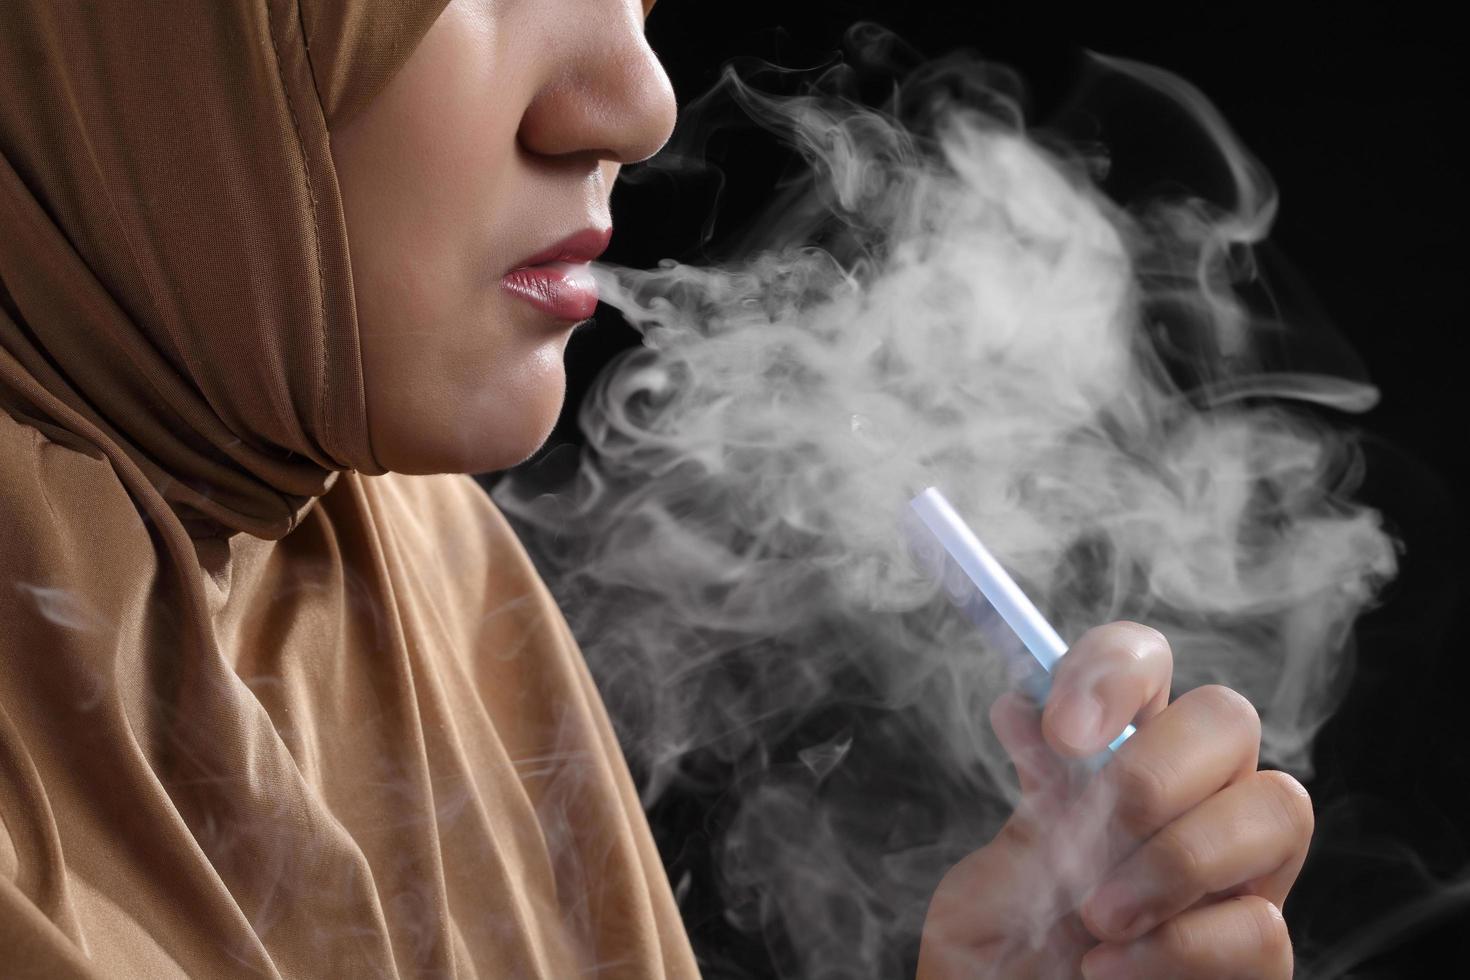 close-up jonge moslimvrouw die e-sigaret rookt op zwarte achtergrond foto